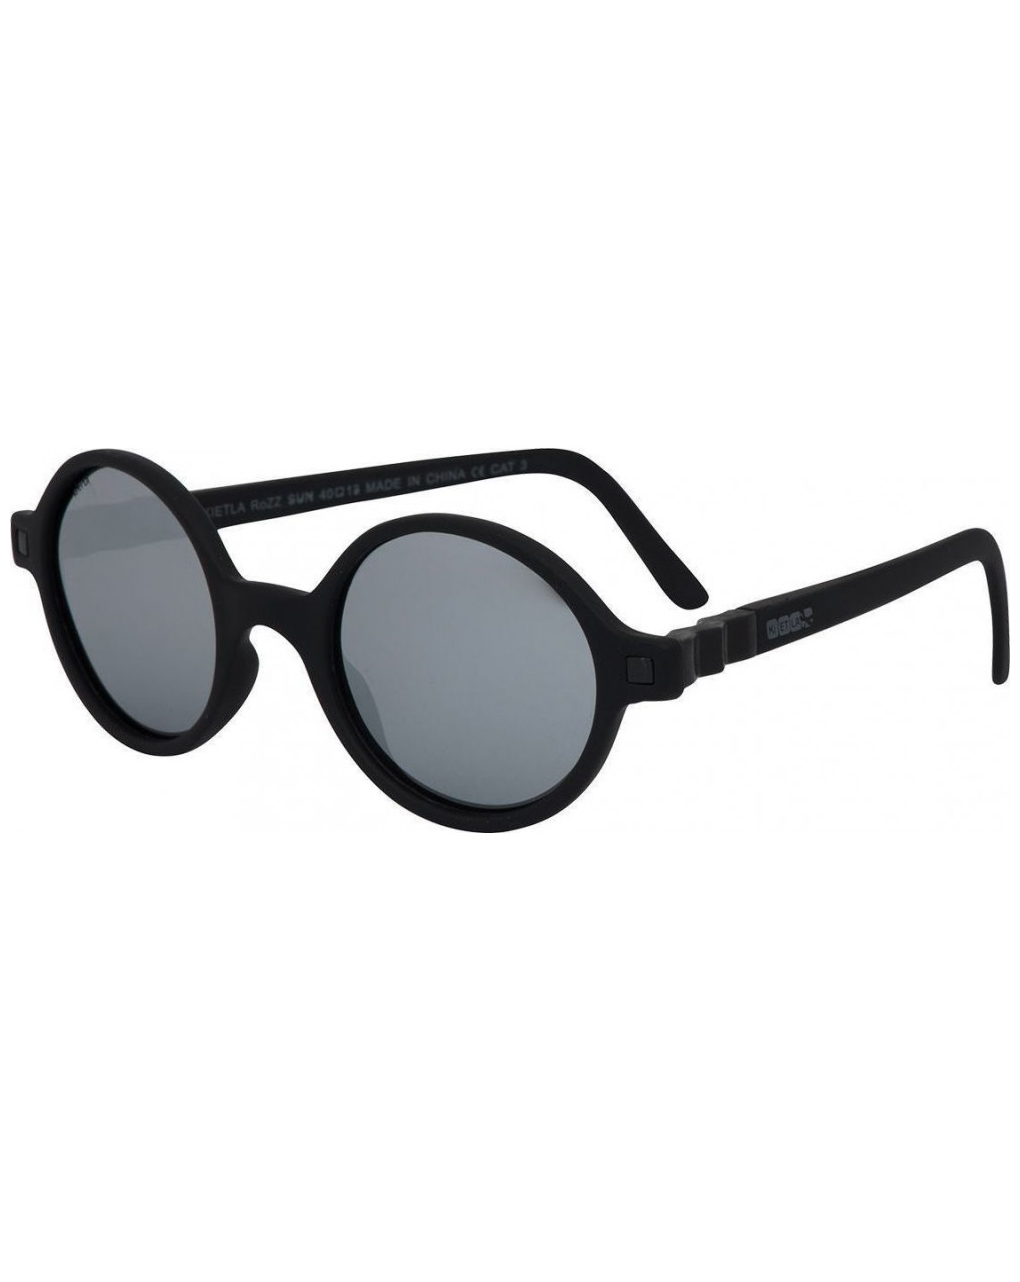 Kietla γυαλιά ηλίου 4-6 eτών rozz - black - kietla